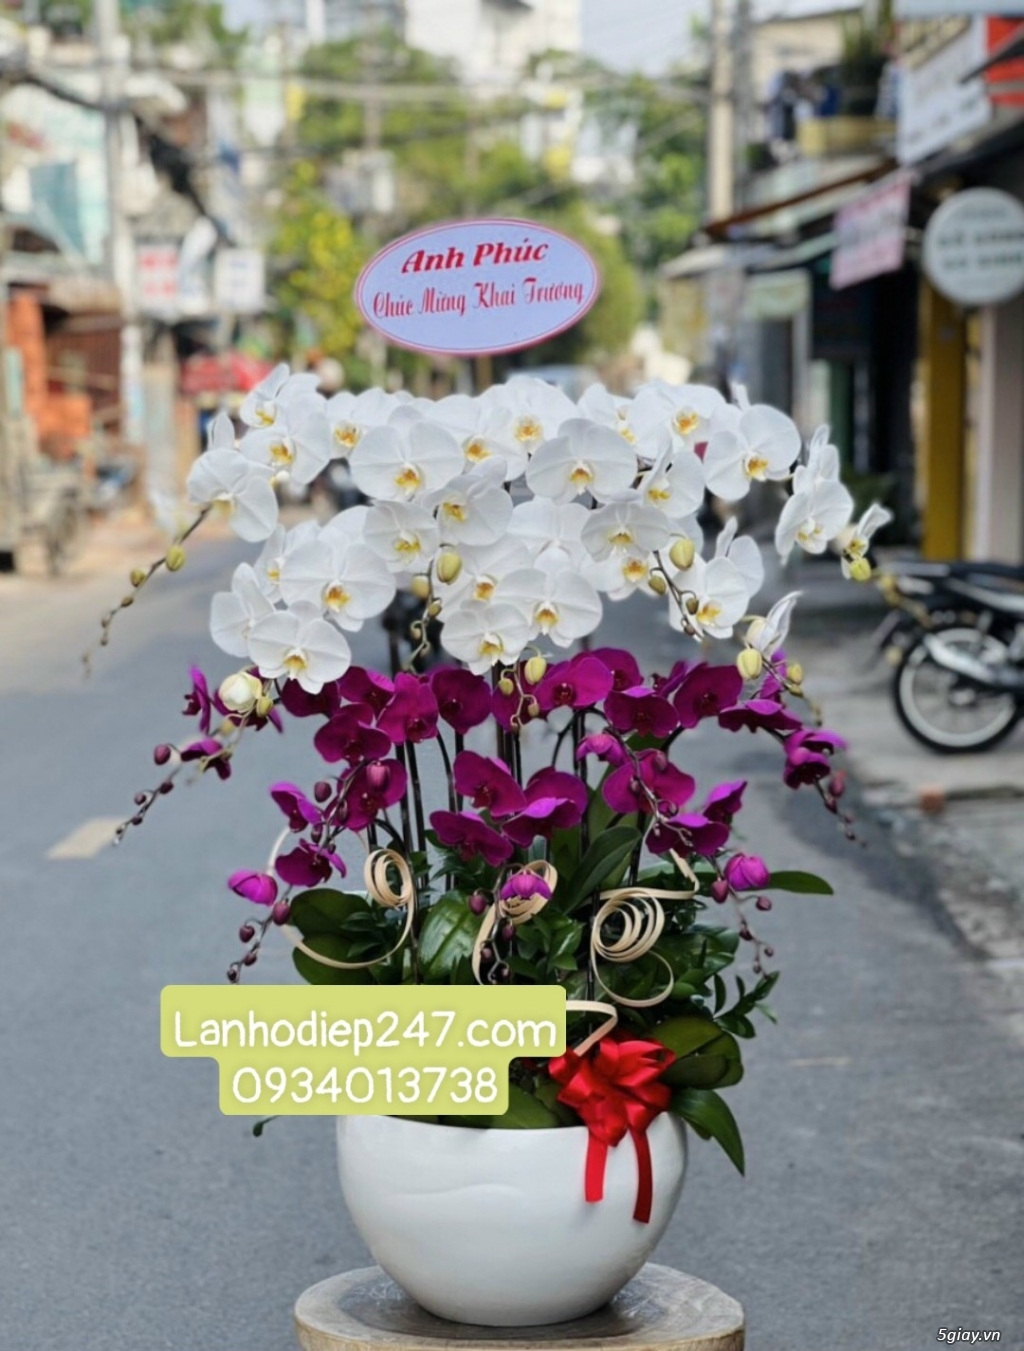 Shop Lan Hồ Điệp Sài Gòn 247 chuyên cung cấp hoa tươi uy tín số 1 HCM - 15